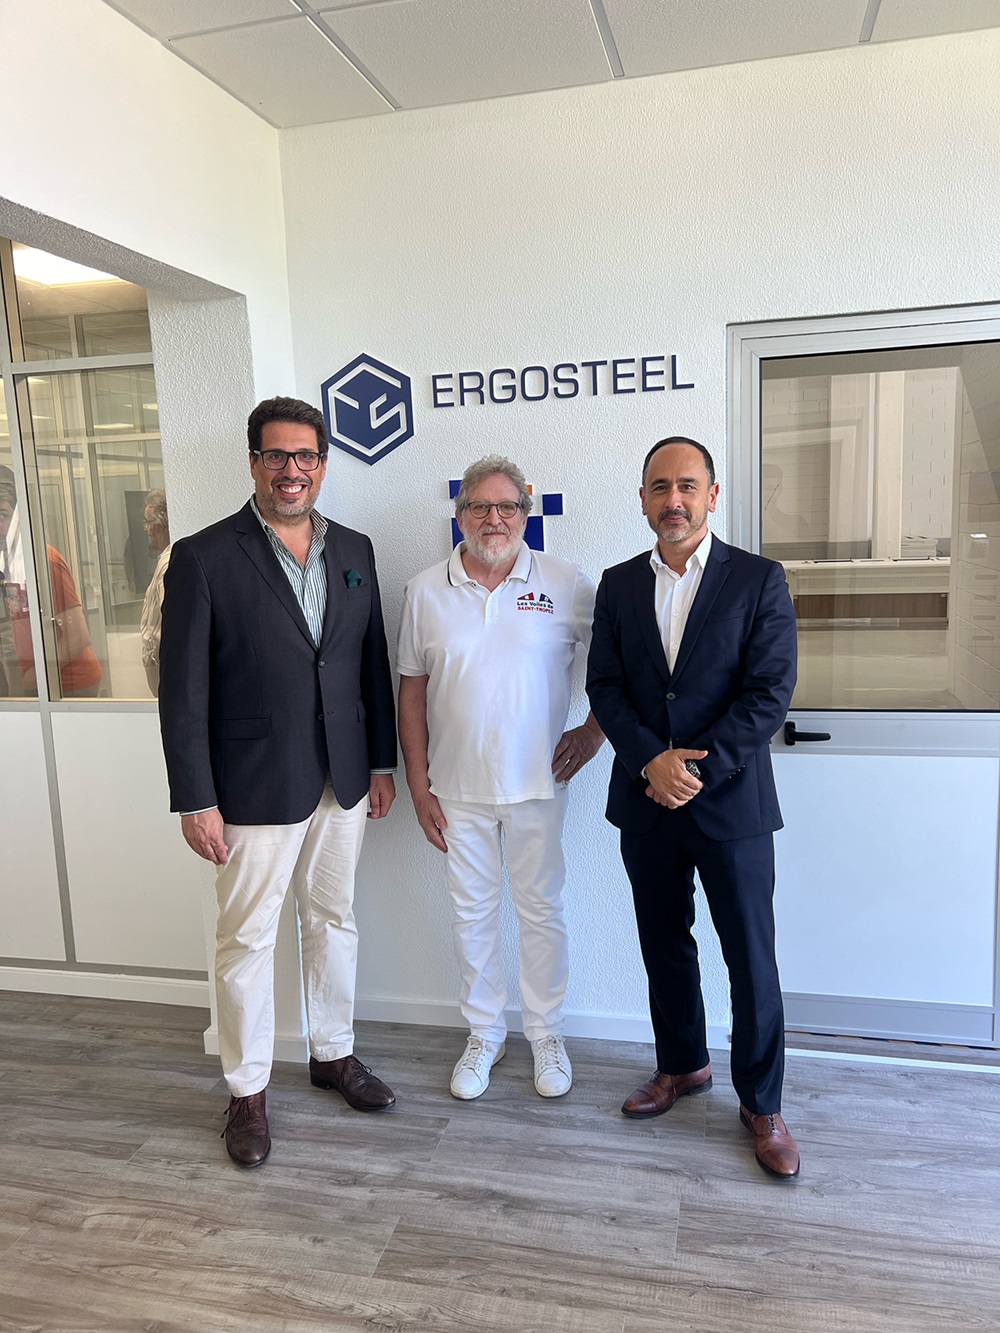 Ergosteel expandiu a sua fábrica no BlueBiz